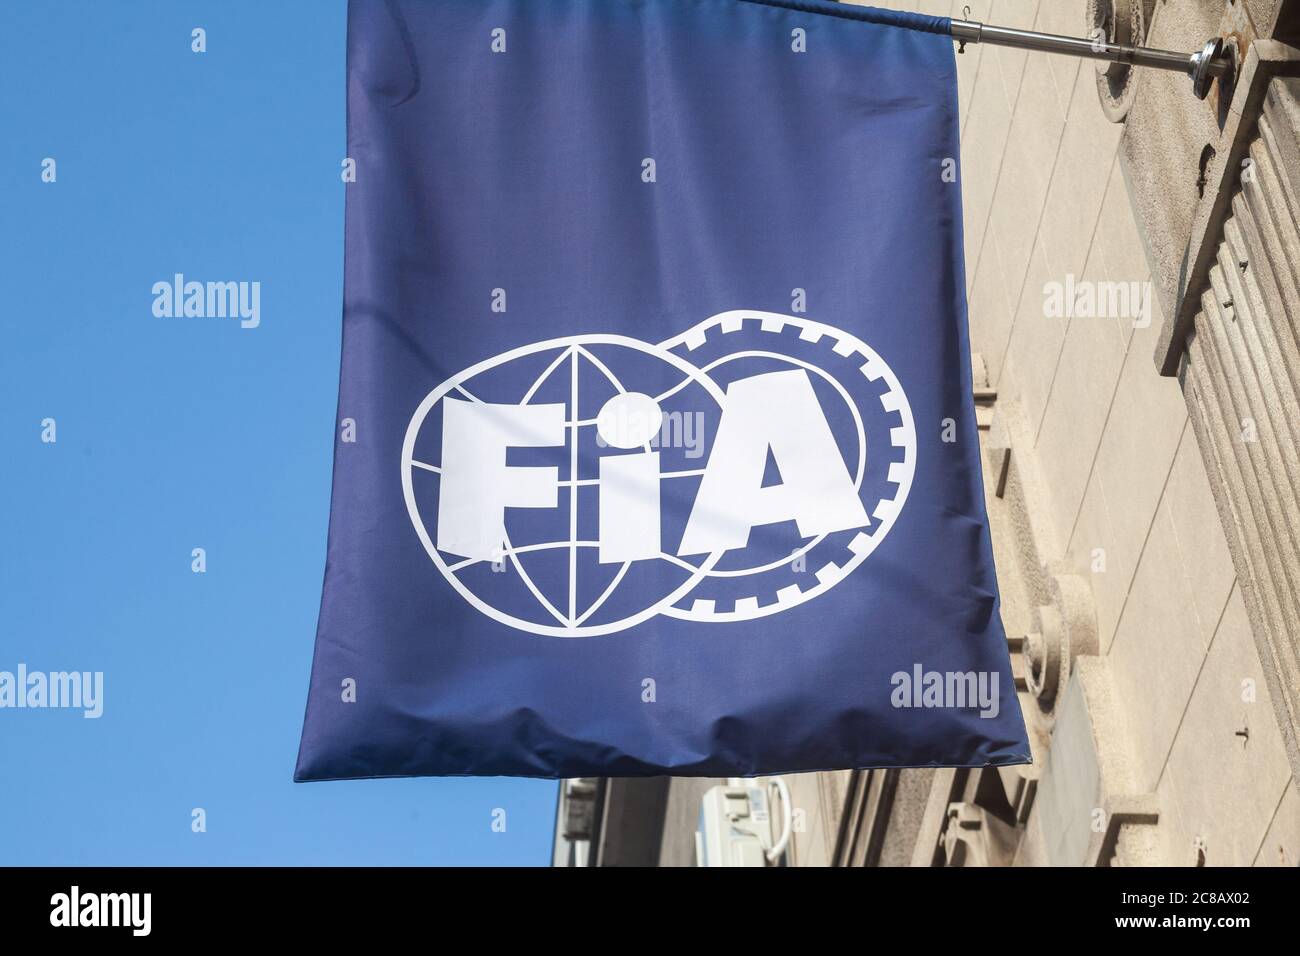 BELGRAD, SERBIEN - 8. AUGUST 2018: FIA-Logo auf ihrem Büro für belgrad. FIA oder Federation internationale de l'automobile ist die internationale Organisation Stockfoto